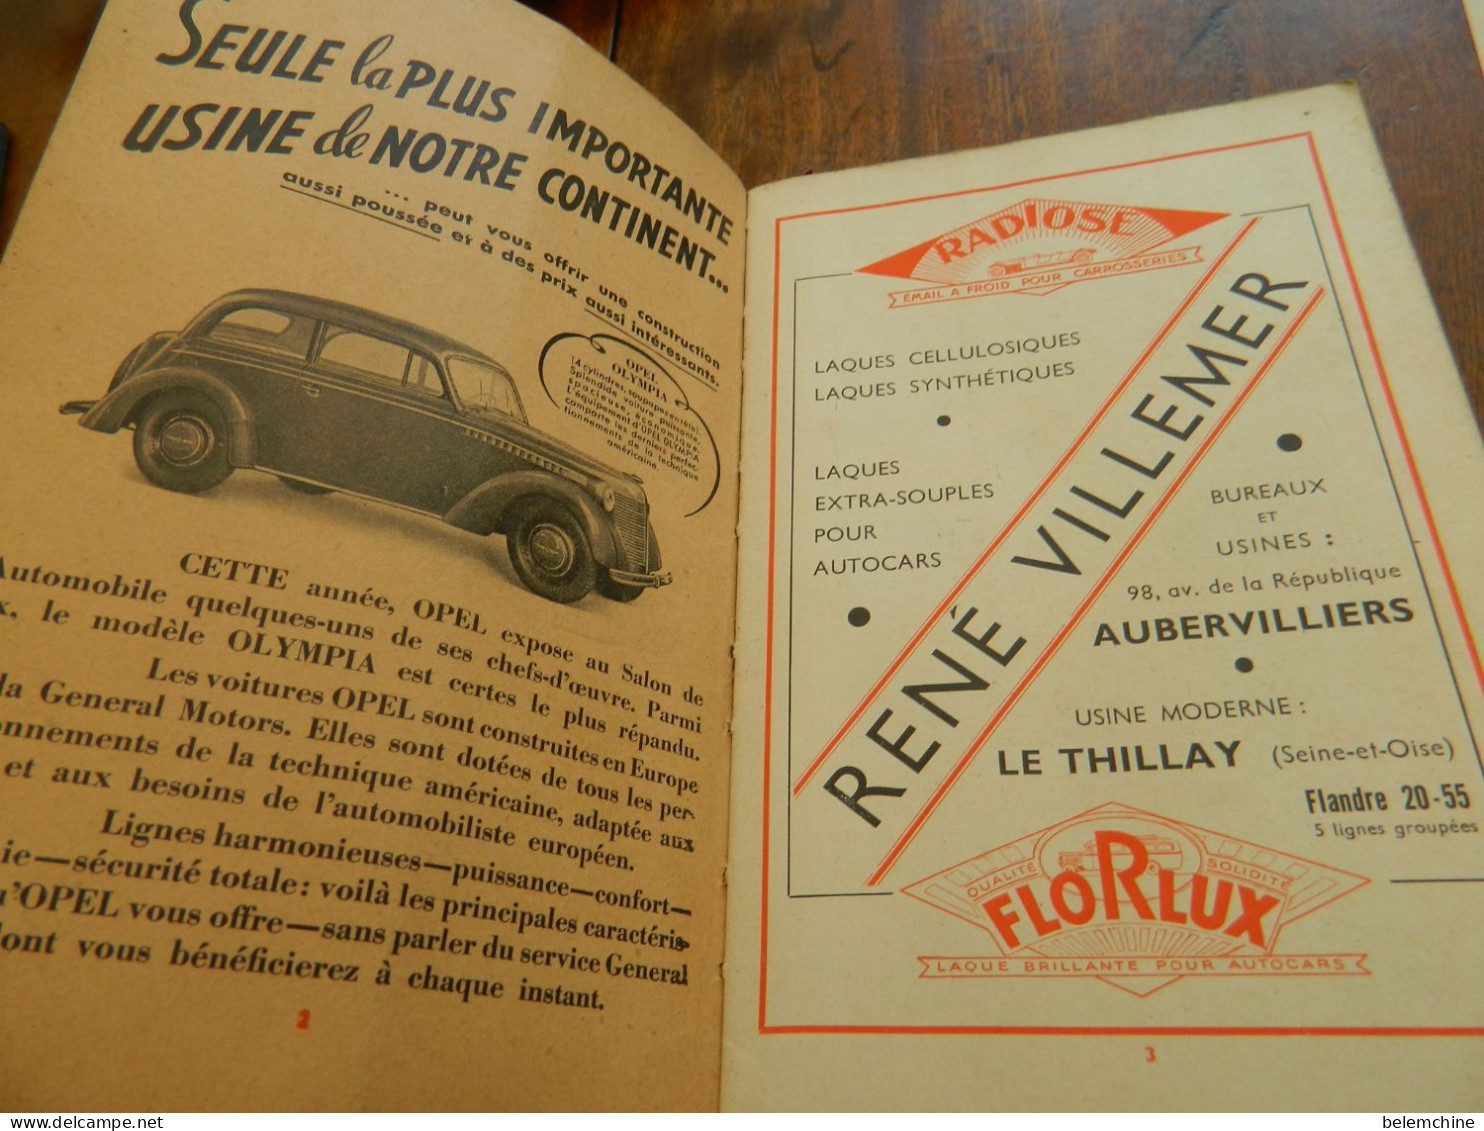 CATALOGUE OFFICIEL DU 32 ème SALON DE L'AUTOMOBILE DU CYCLE ET DES SPORTS  PARIS GRAND PALAIS 1938 - Automobile